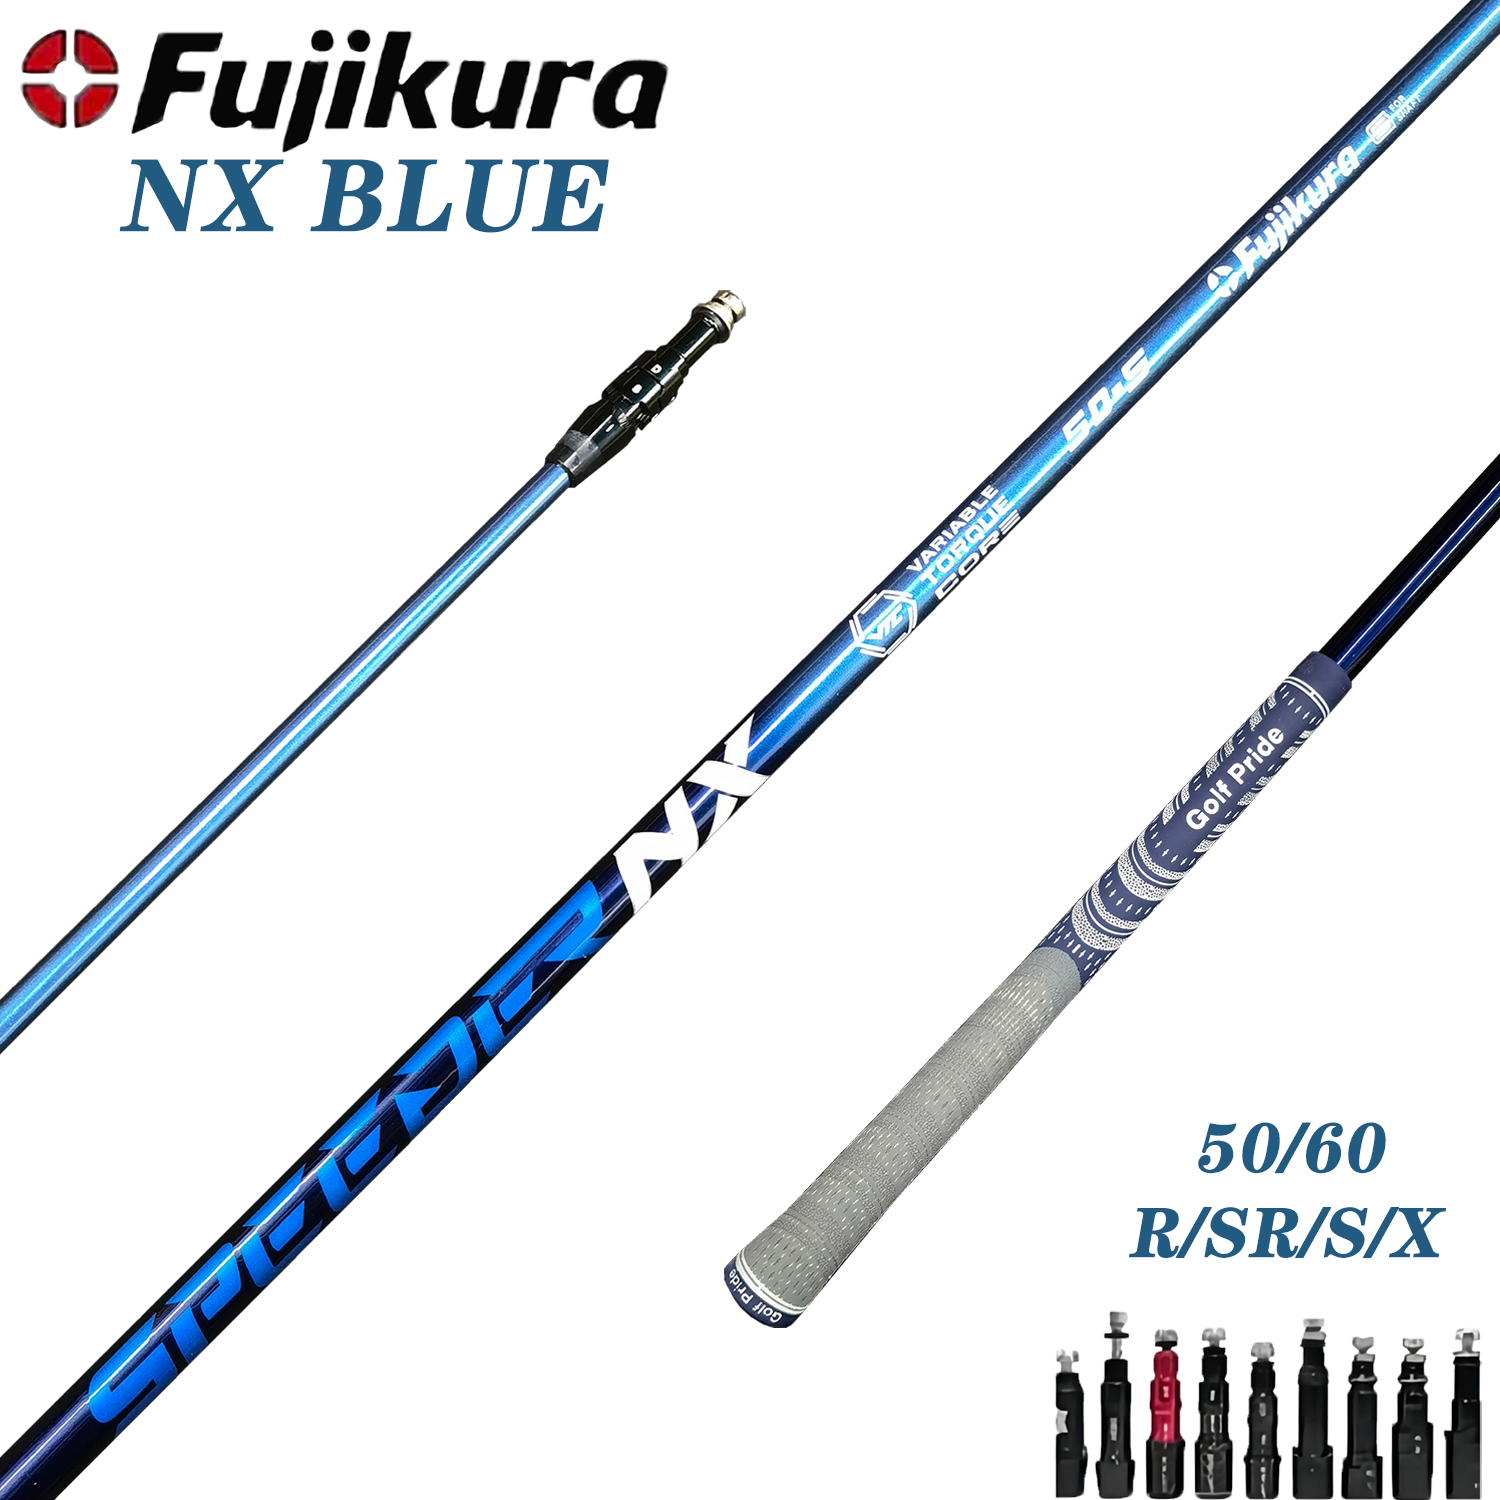 Aanpasbare golf Shaft - Fujikura SPEEDER NX 50/60 Blauw, Club Shafts - 0.335 Tip - S, R, X Flex Opties - Gratis montage Sleeve Grip